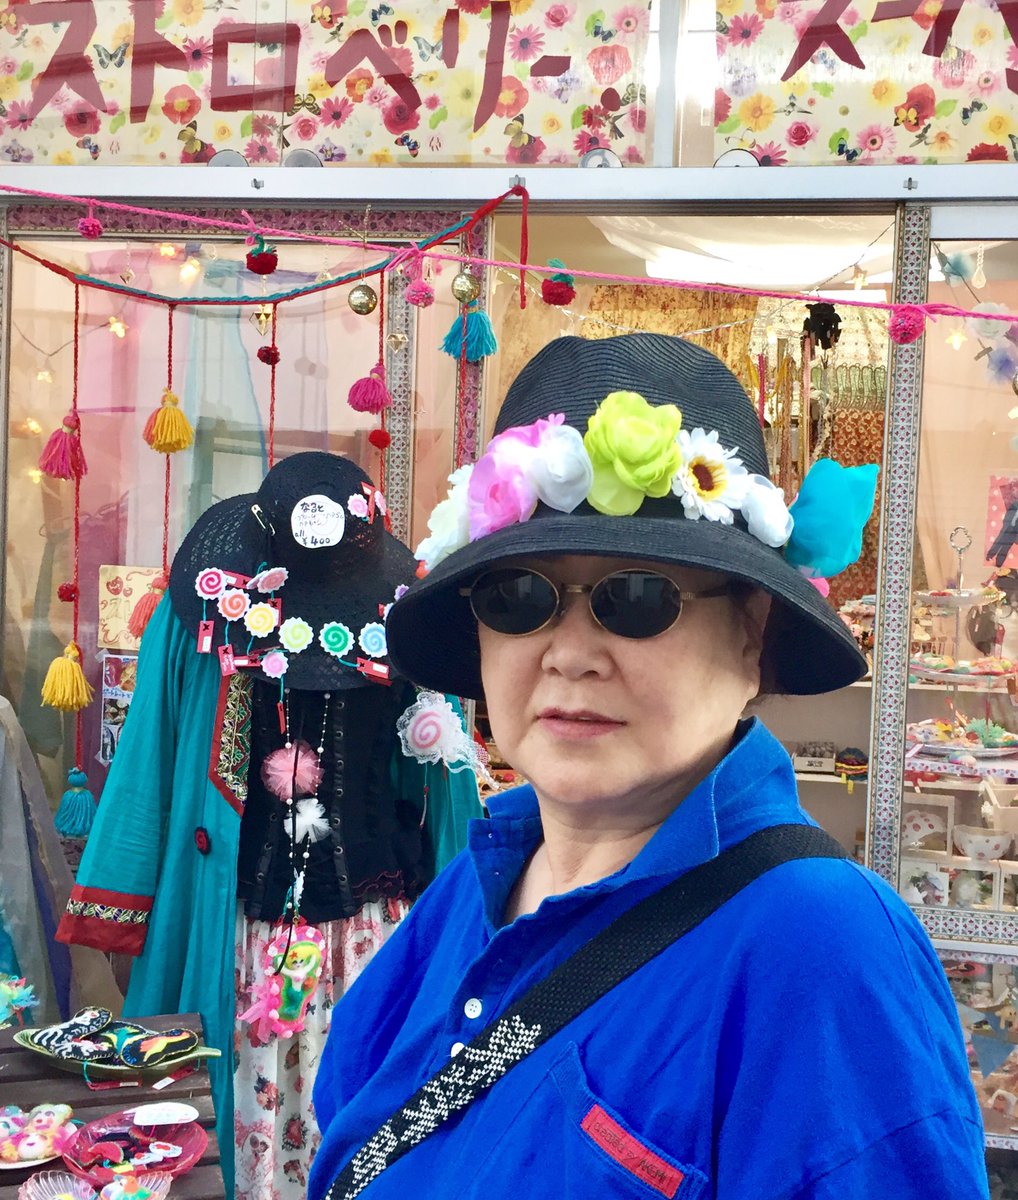 ストロベリー スーパーソニック 謎めいたマダムの オーダー で 帽子のお花飾り ゴムに造花と白いオーガンジーのお花を通したもので どの帽子にも着脱可能です これはマダムのアイデア 派手すぎるかなぁと思ってたら 今ひとつ地味 とのことで追加